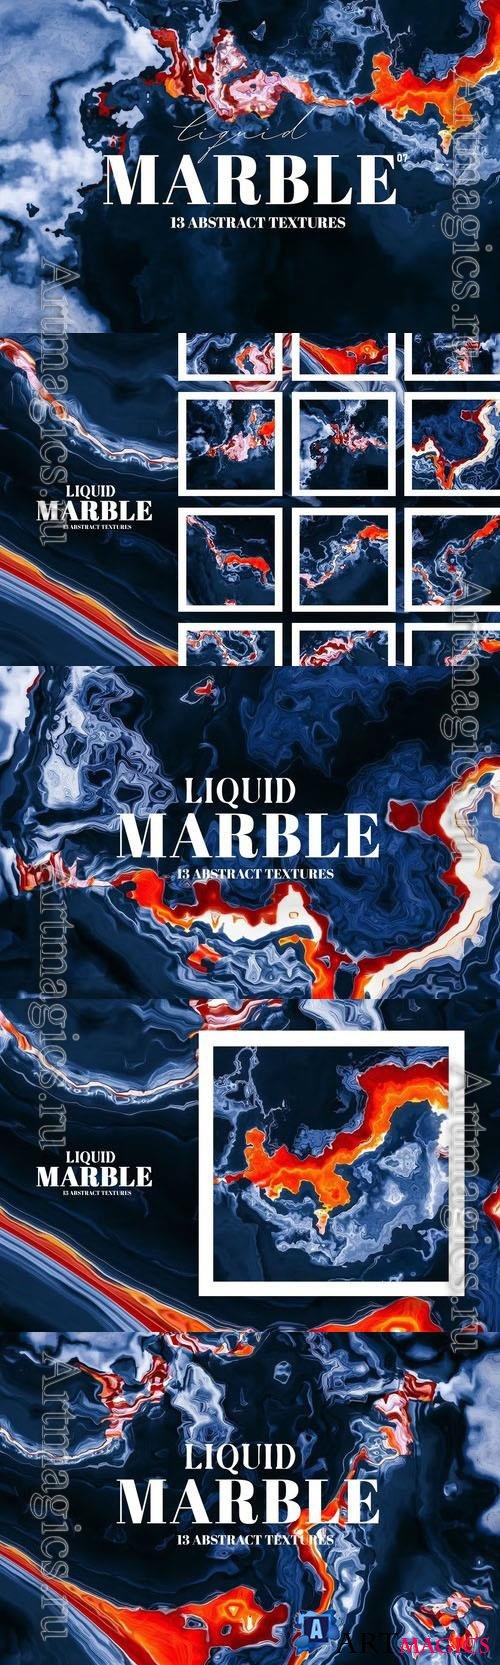 Liquid Marble Design Textures 07